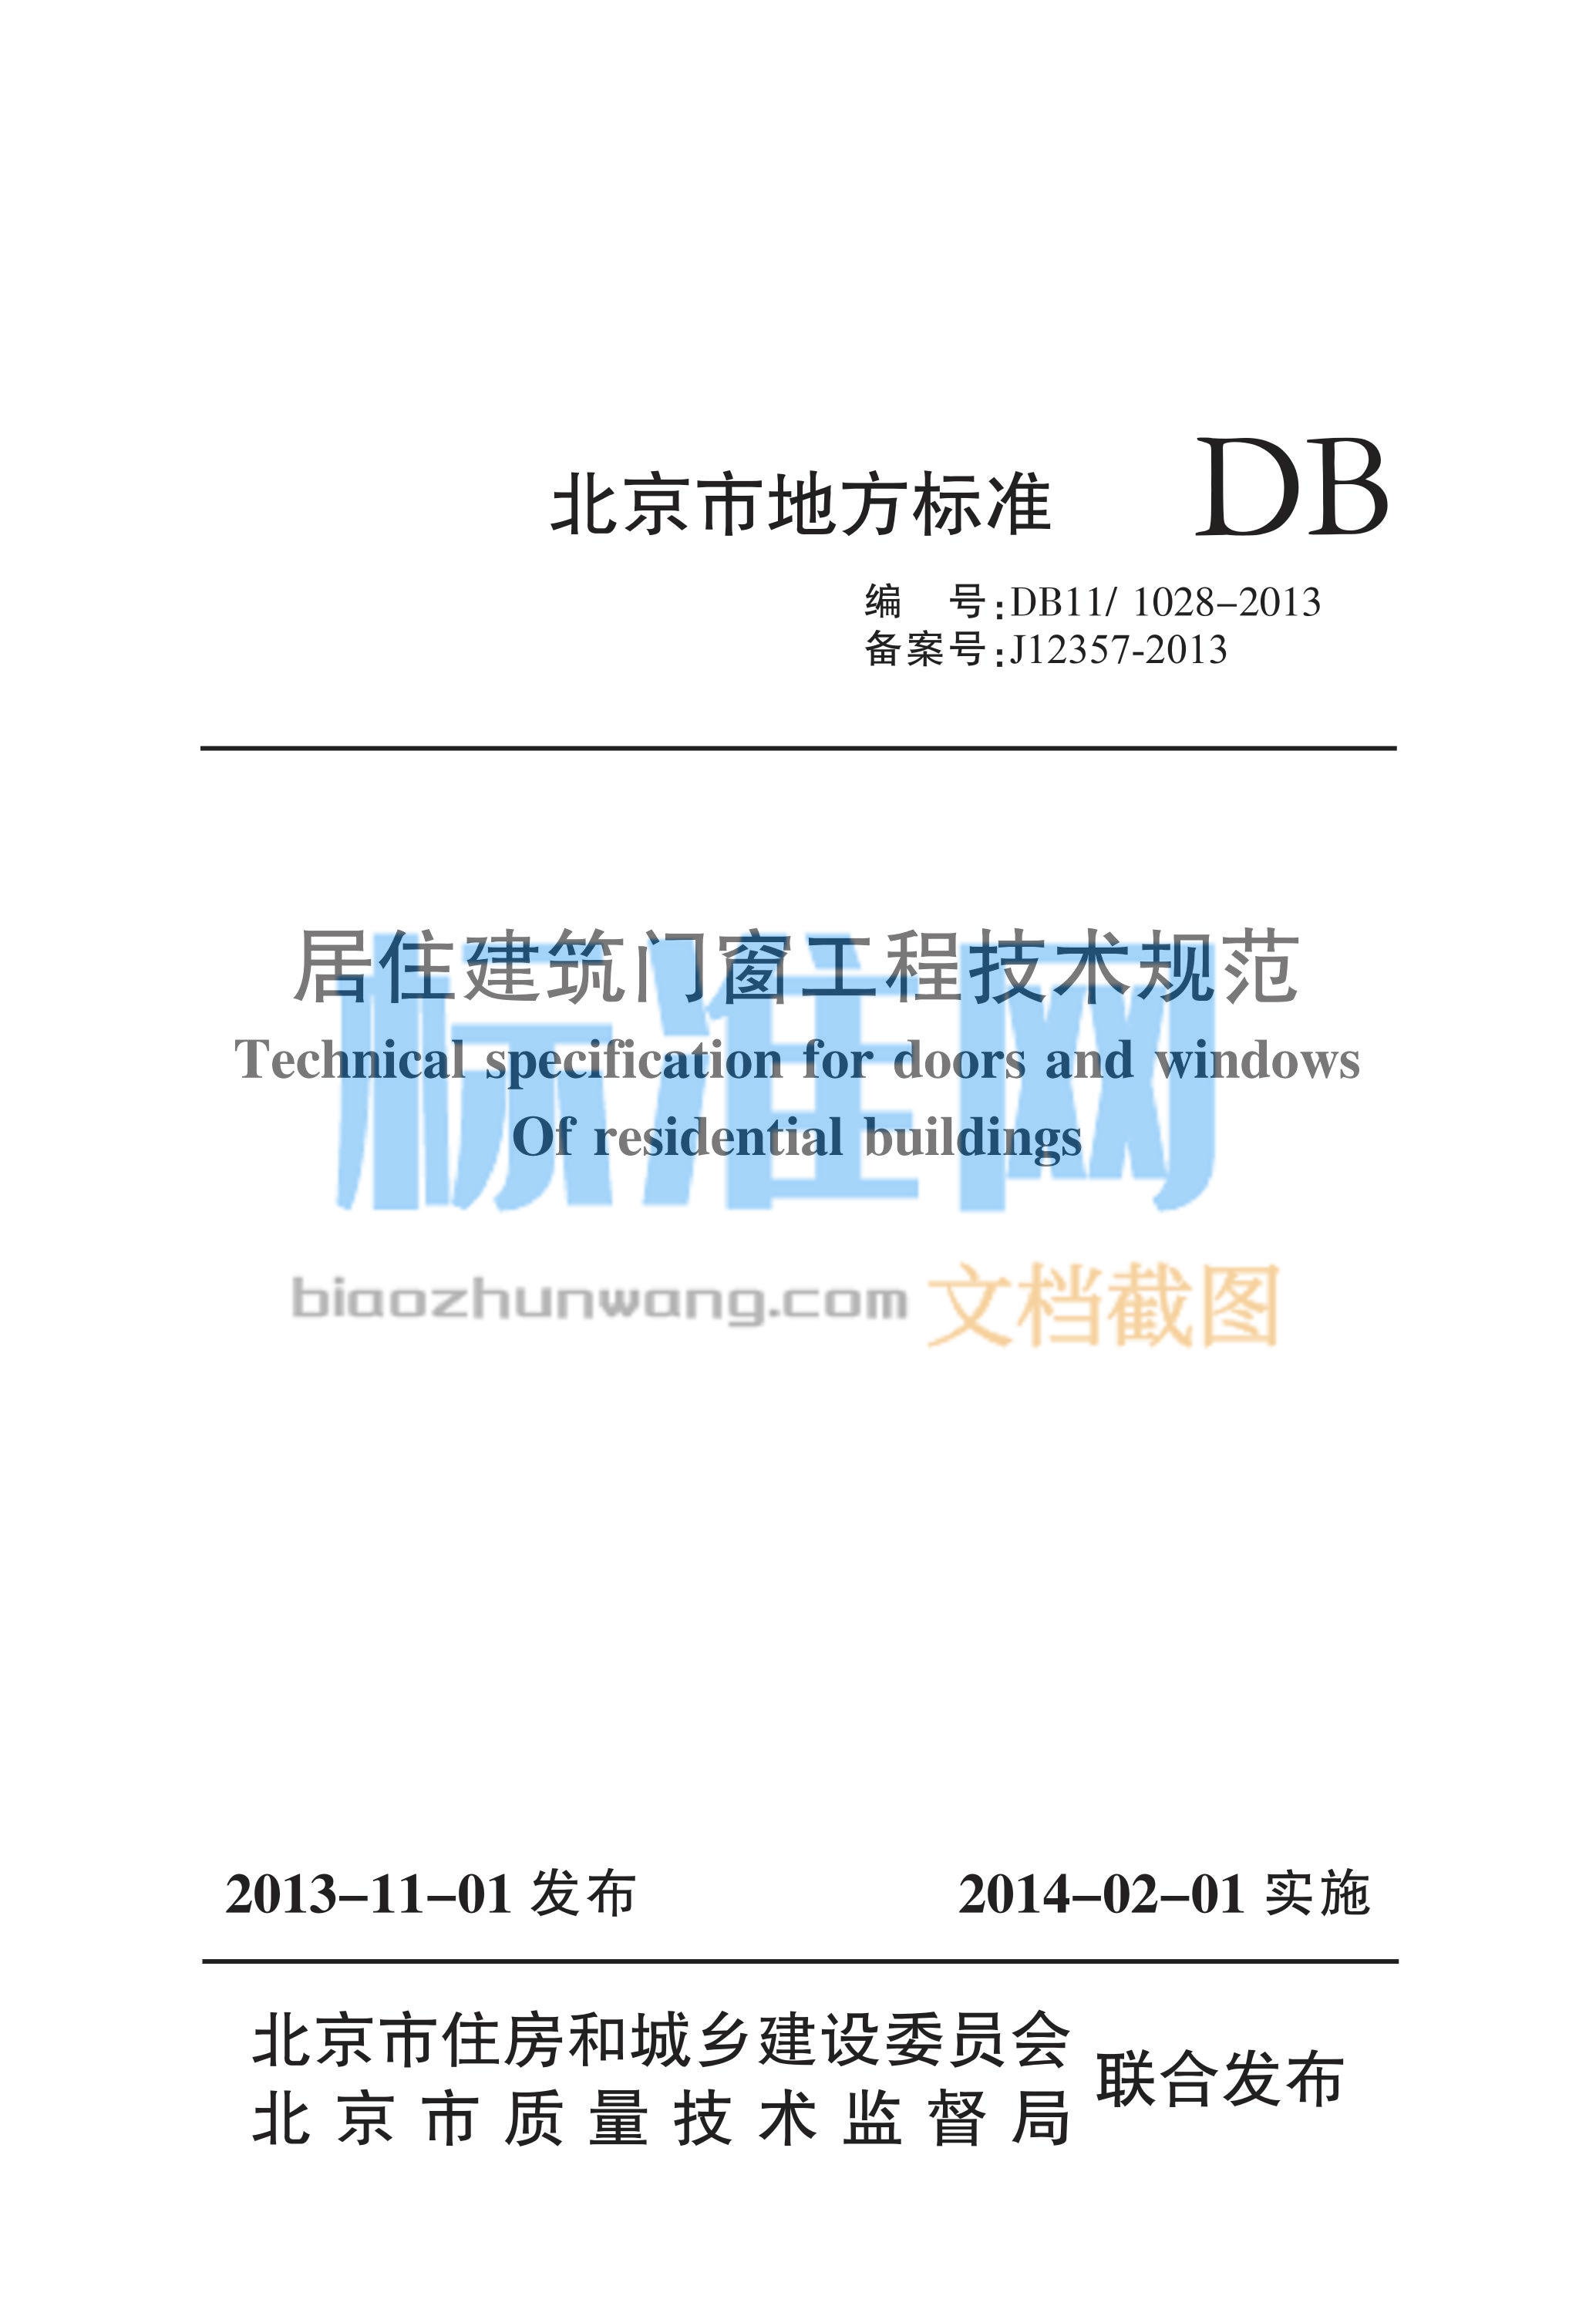 DB11/1028-2013 居住建筑门窗工程技术规范